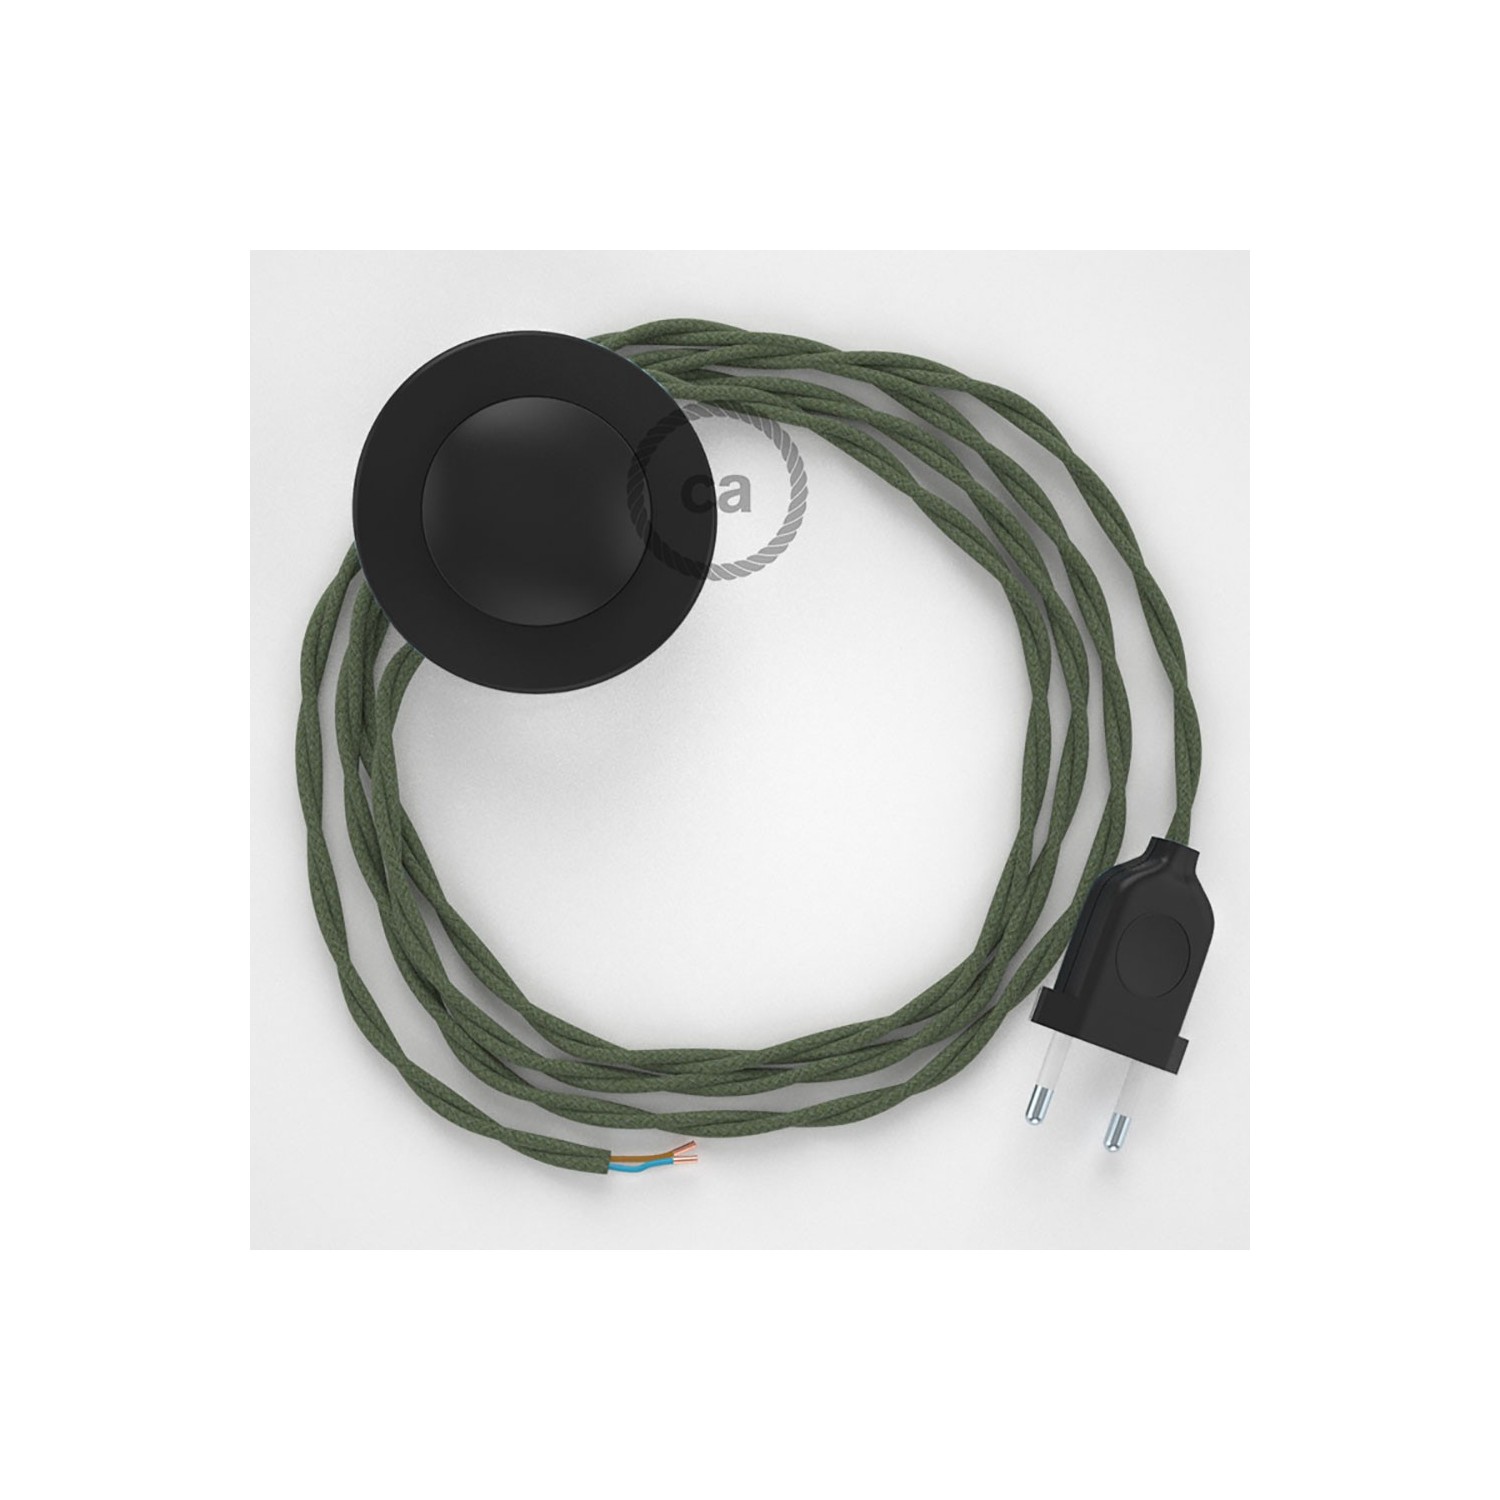 Sladdställ med fotströmbrytare, TC63 Grå/Grön Bomull 3 m. Välj färg på strömbrytare och kontakt